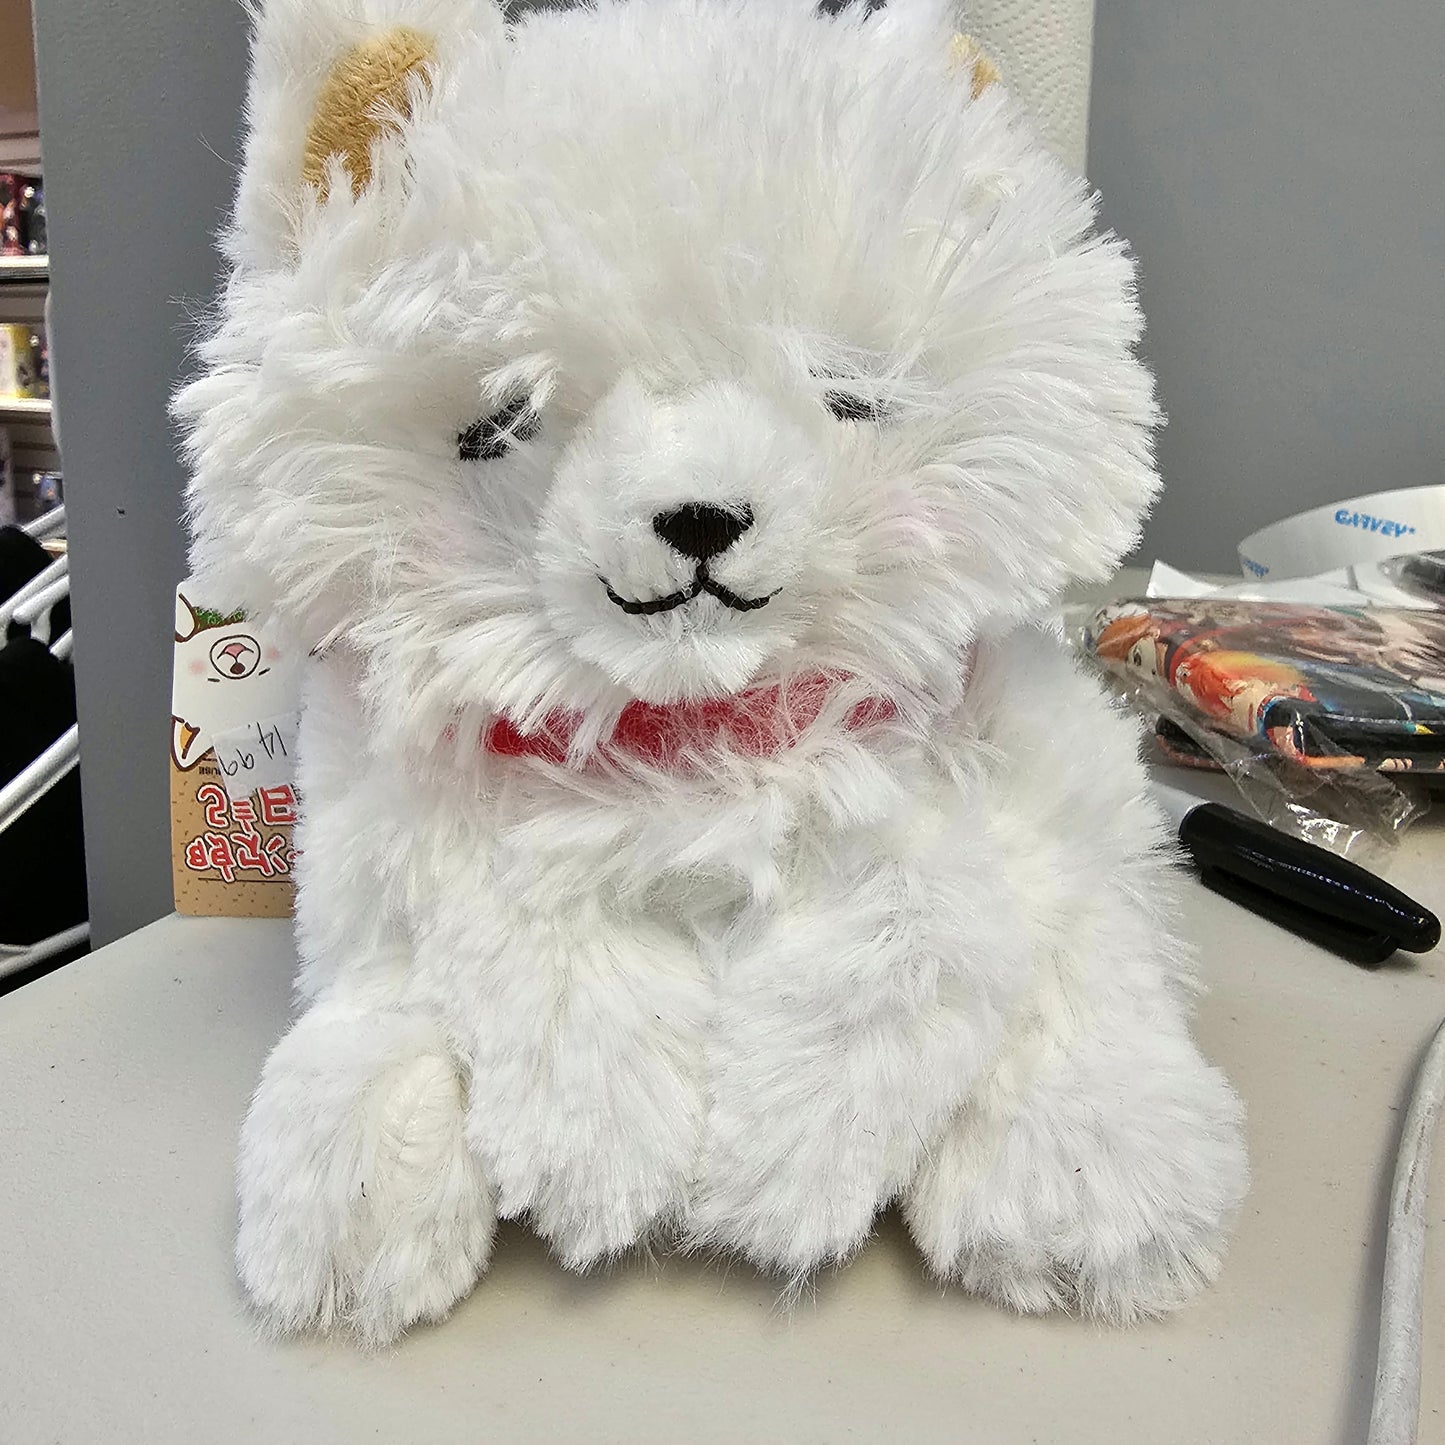 Kawaii Dog Fluffy Plush